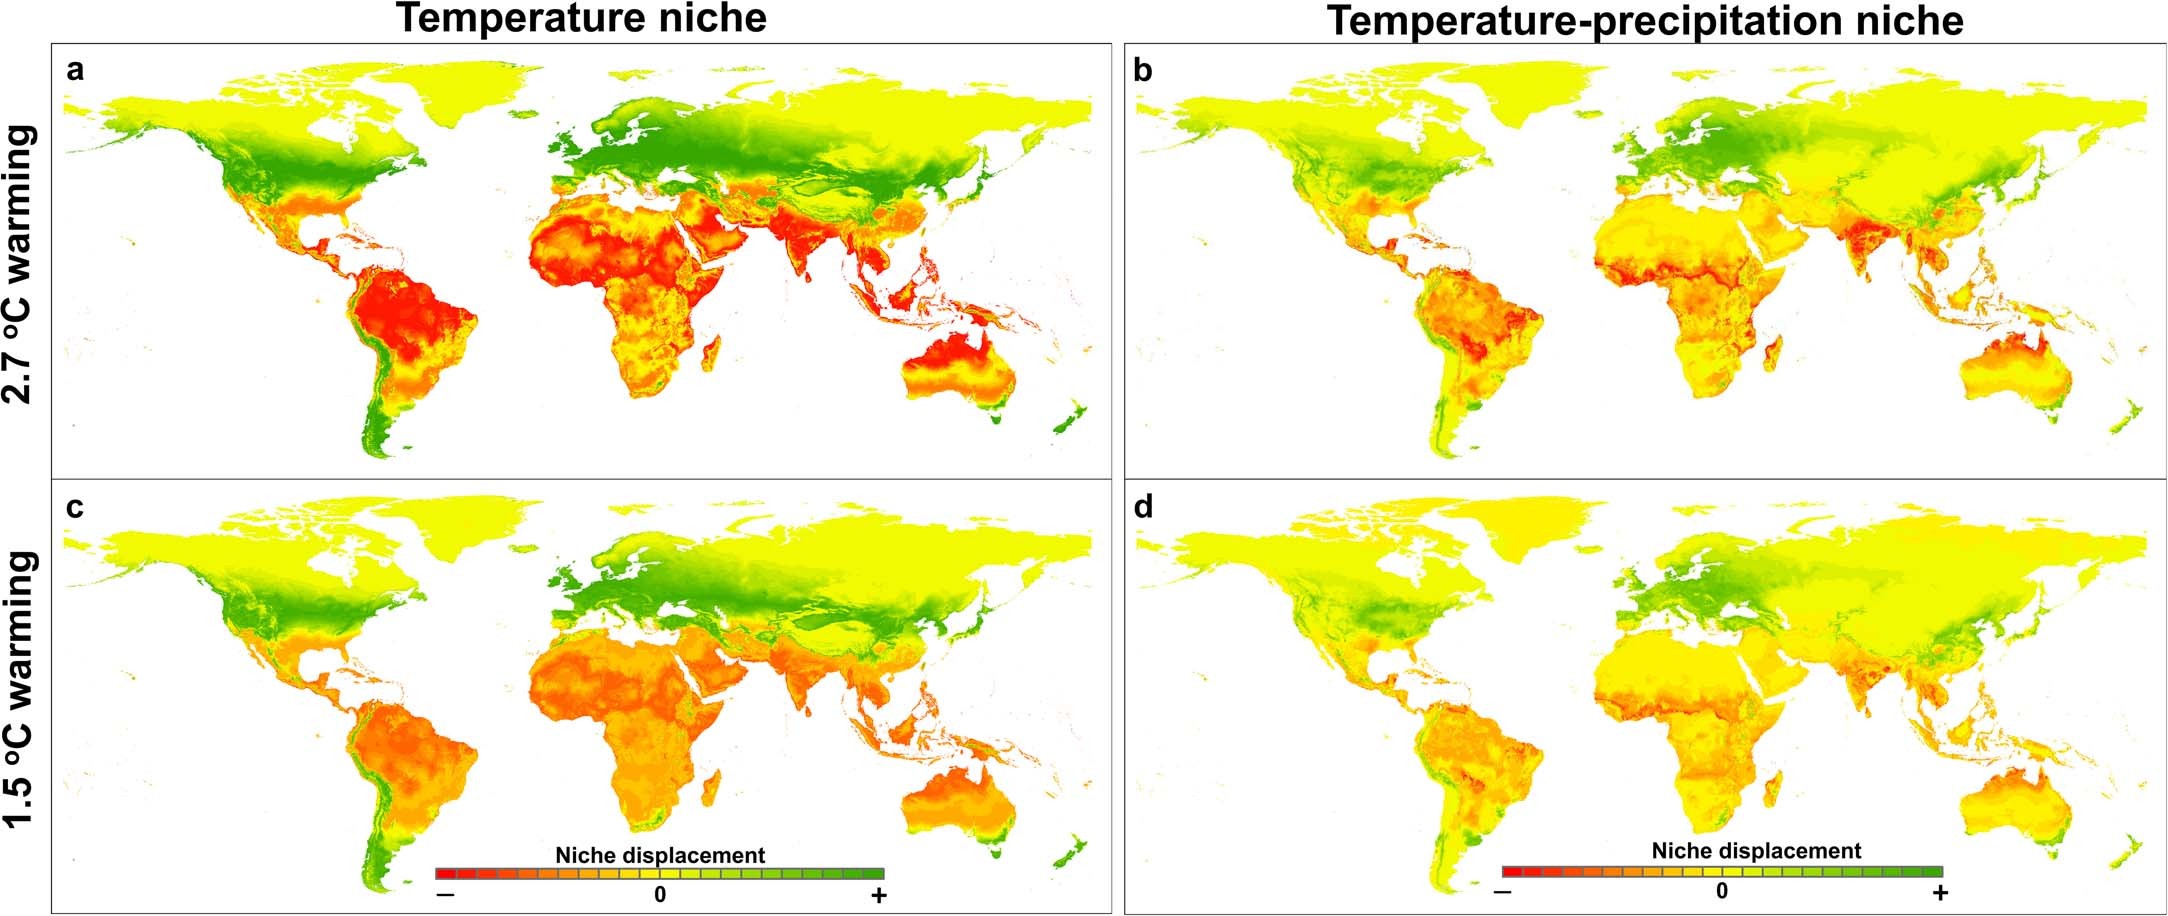 temperatura e precipitação de temperatura sob diferentes níveis de aquecimento global